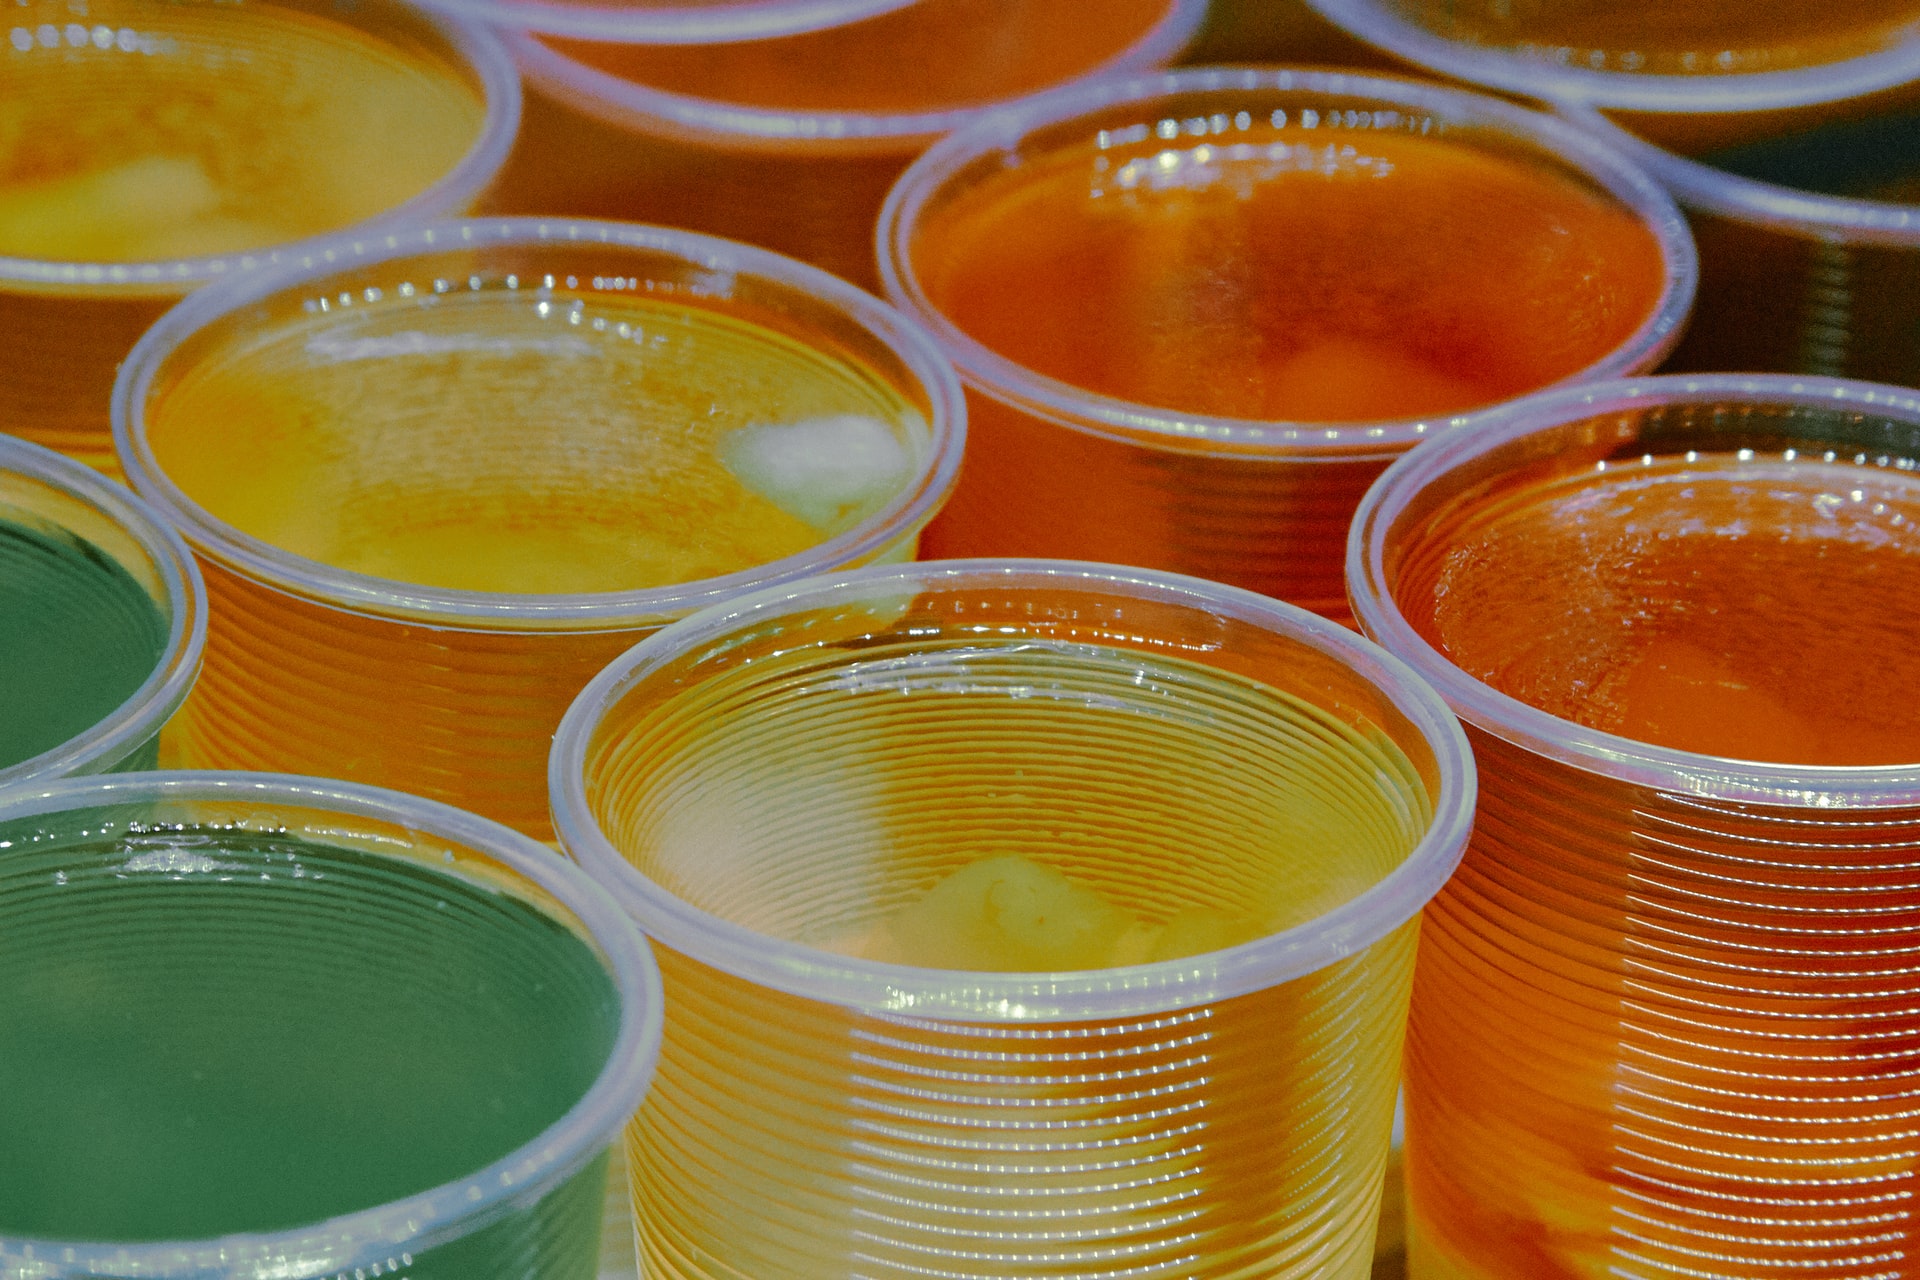 Green, yellow, and orange jello shots made with Malibu rum.